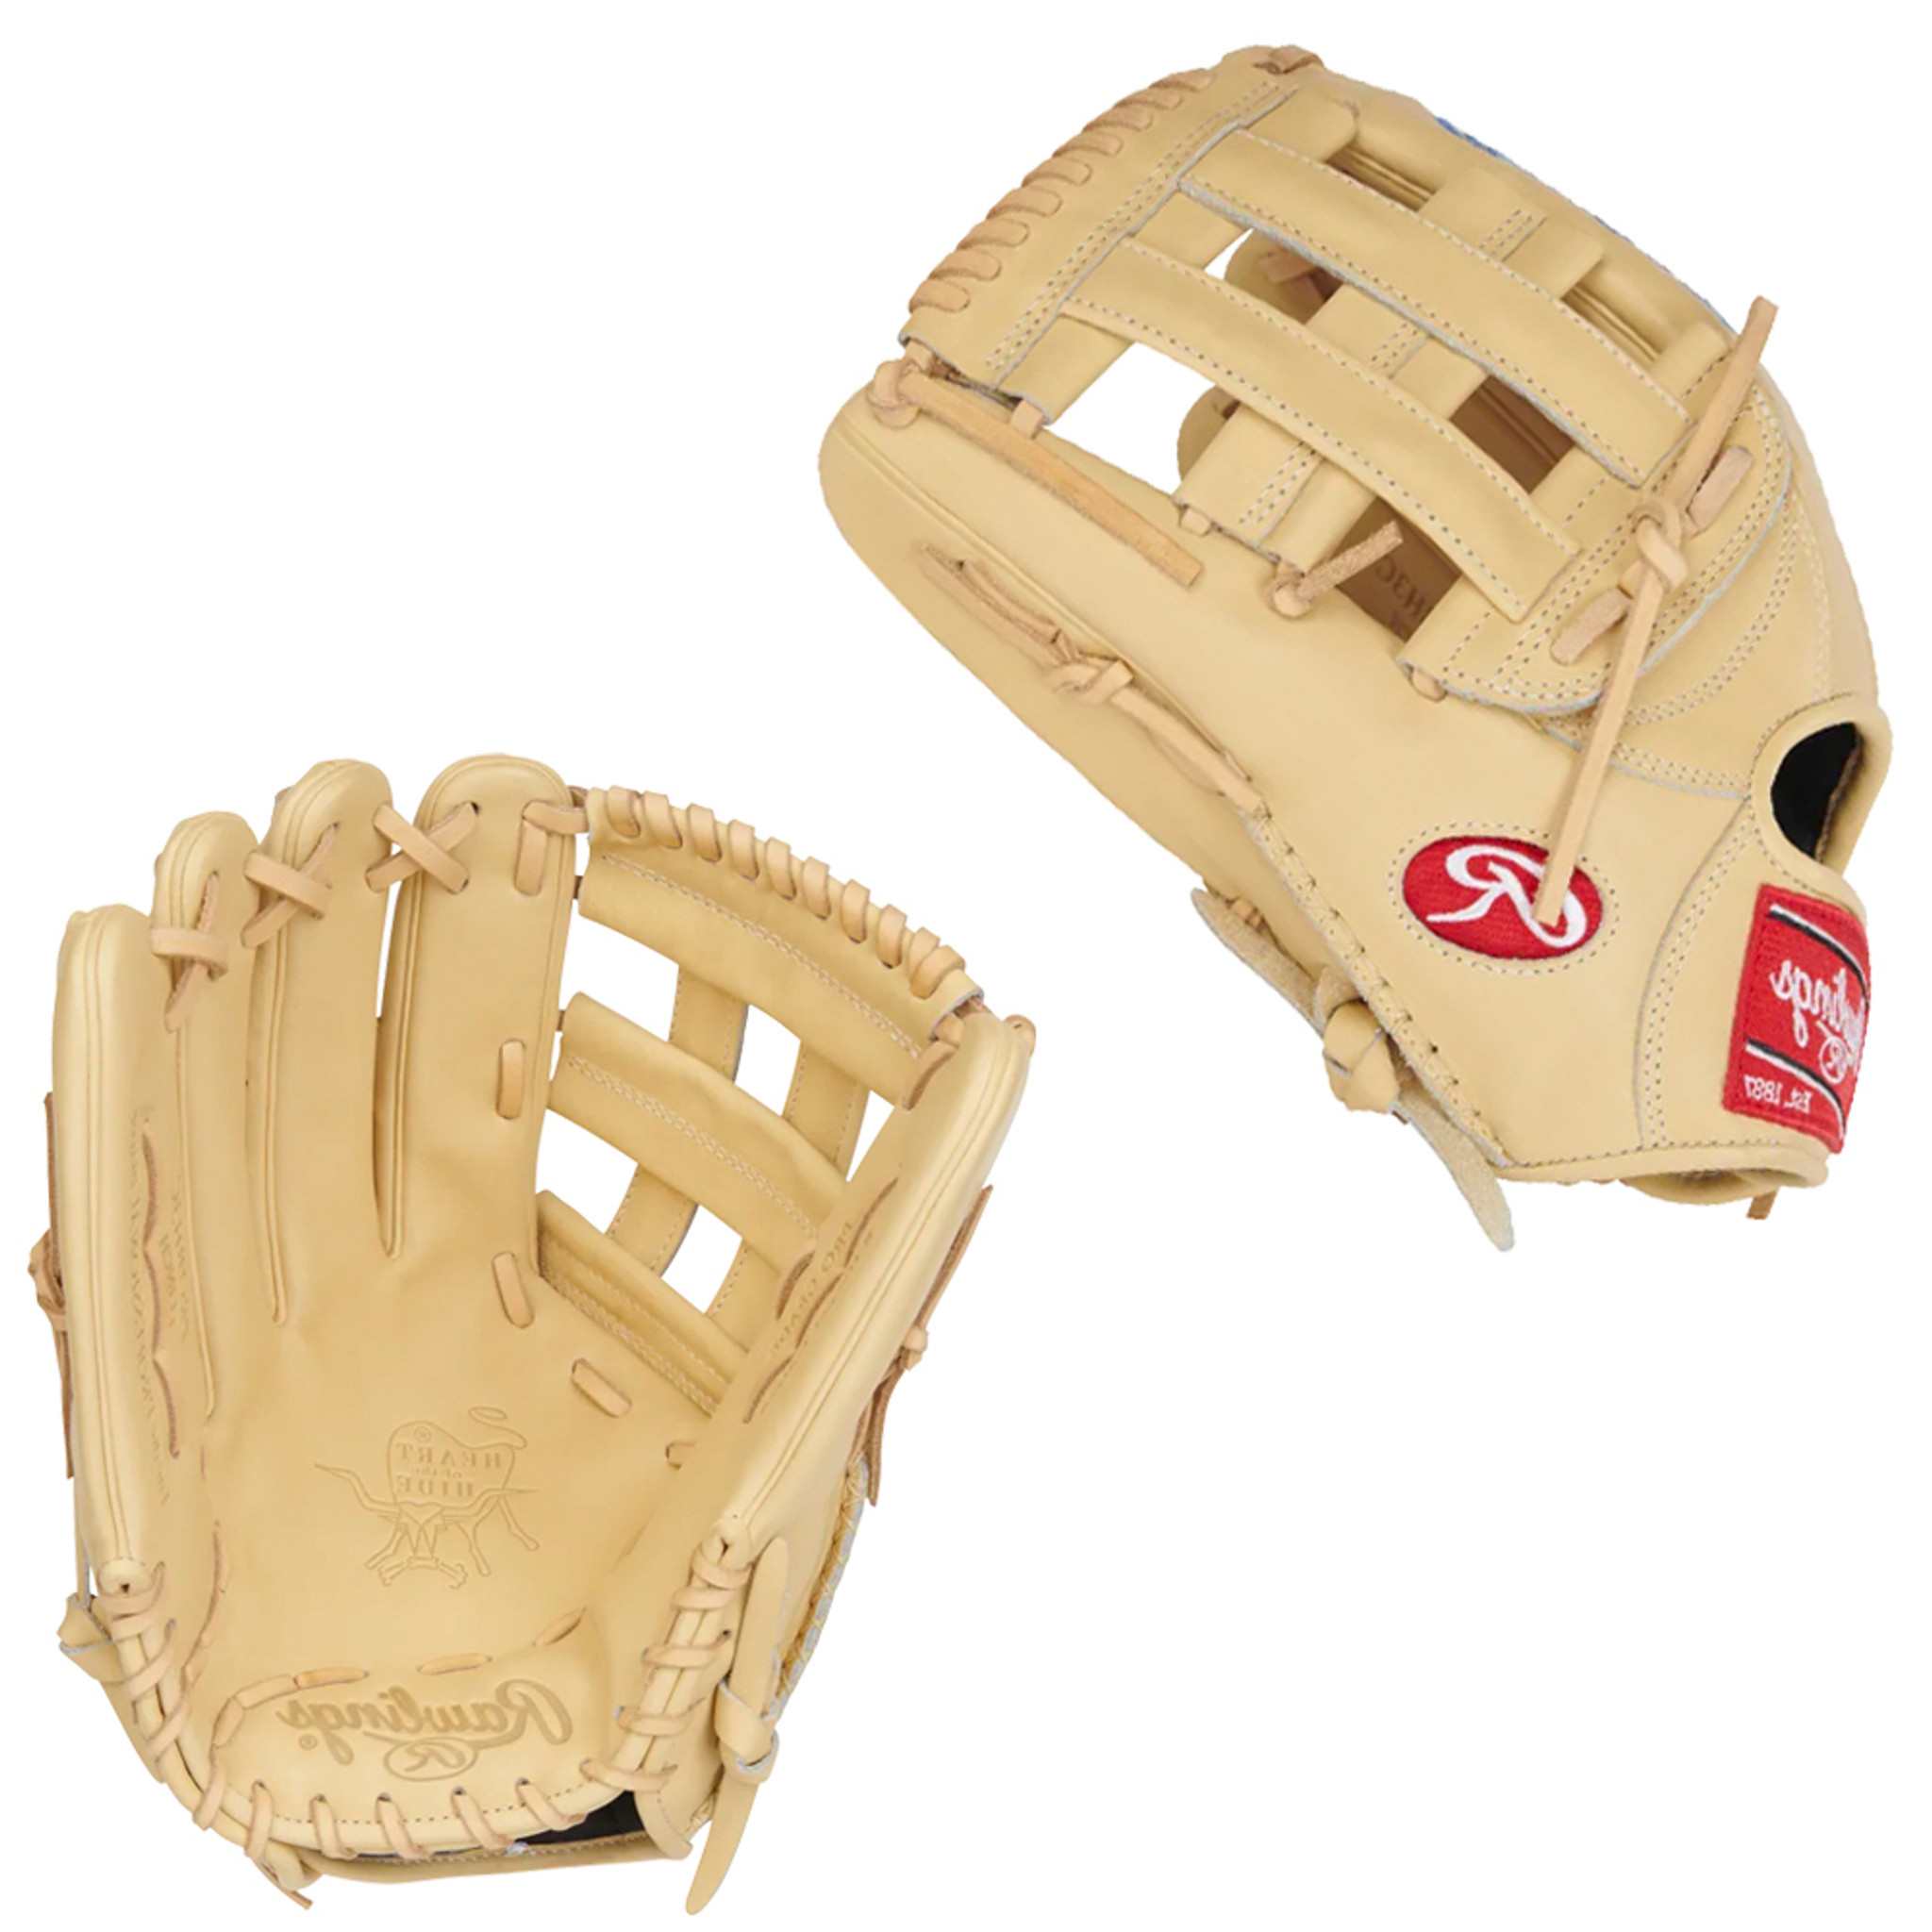 Rawlings Heart of The Hide Bryce Harper 13 Baseball Glove: PROBH3C